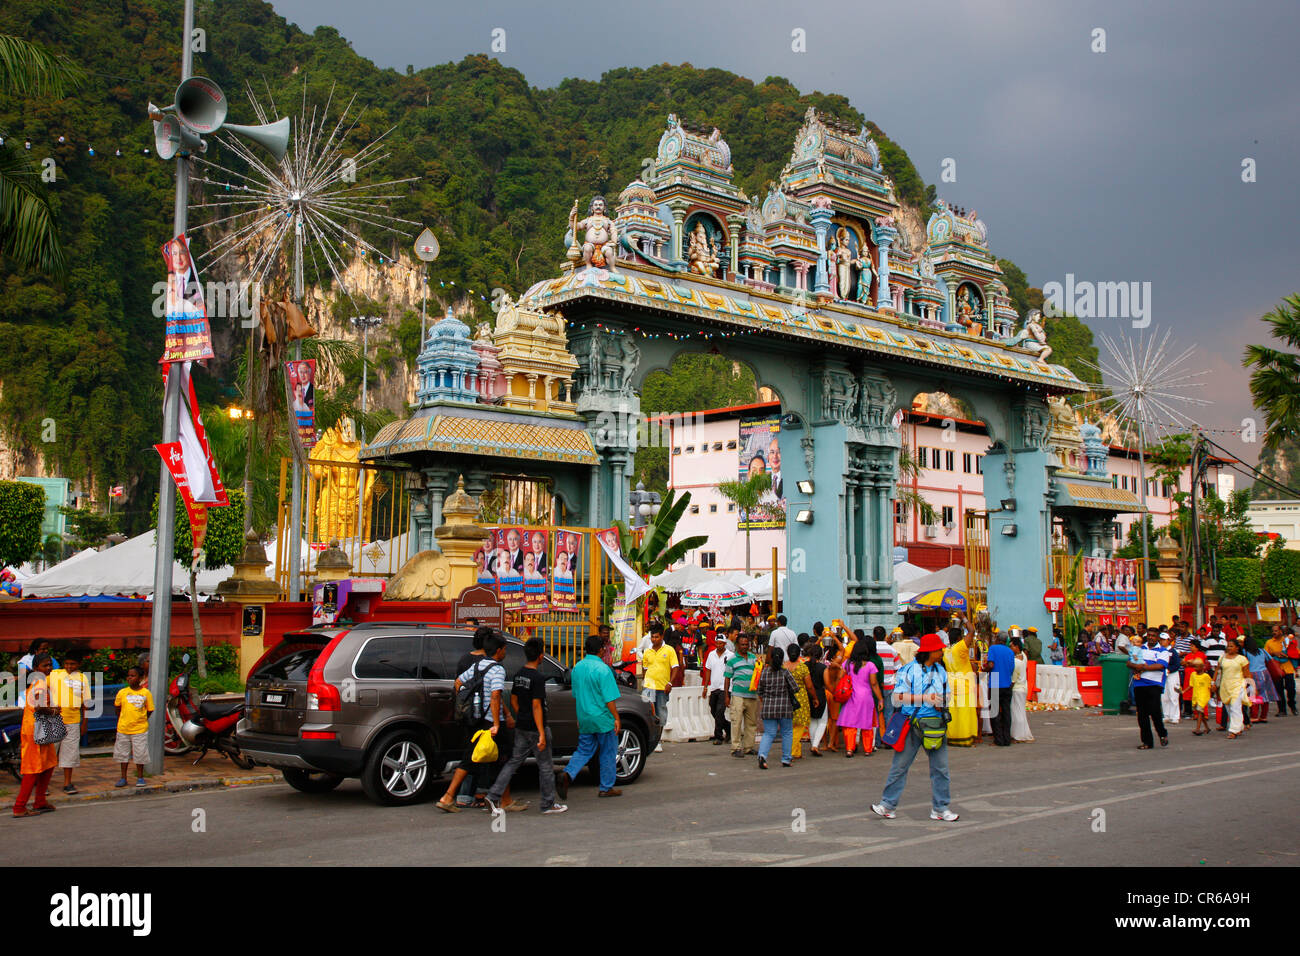 Pilgrims, Hindu festival Thaipusam, Batu Caves limestone caves and temples, Kuala Lumpur, Malaysia, Southeast Asia, Asia Stock Photo